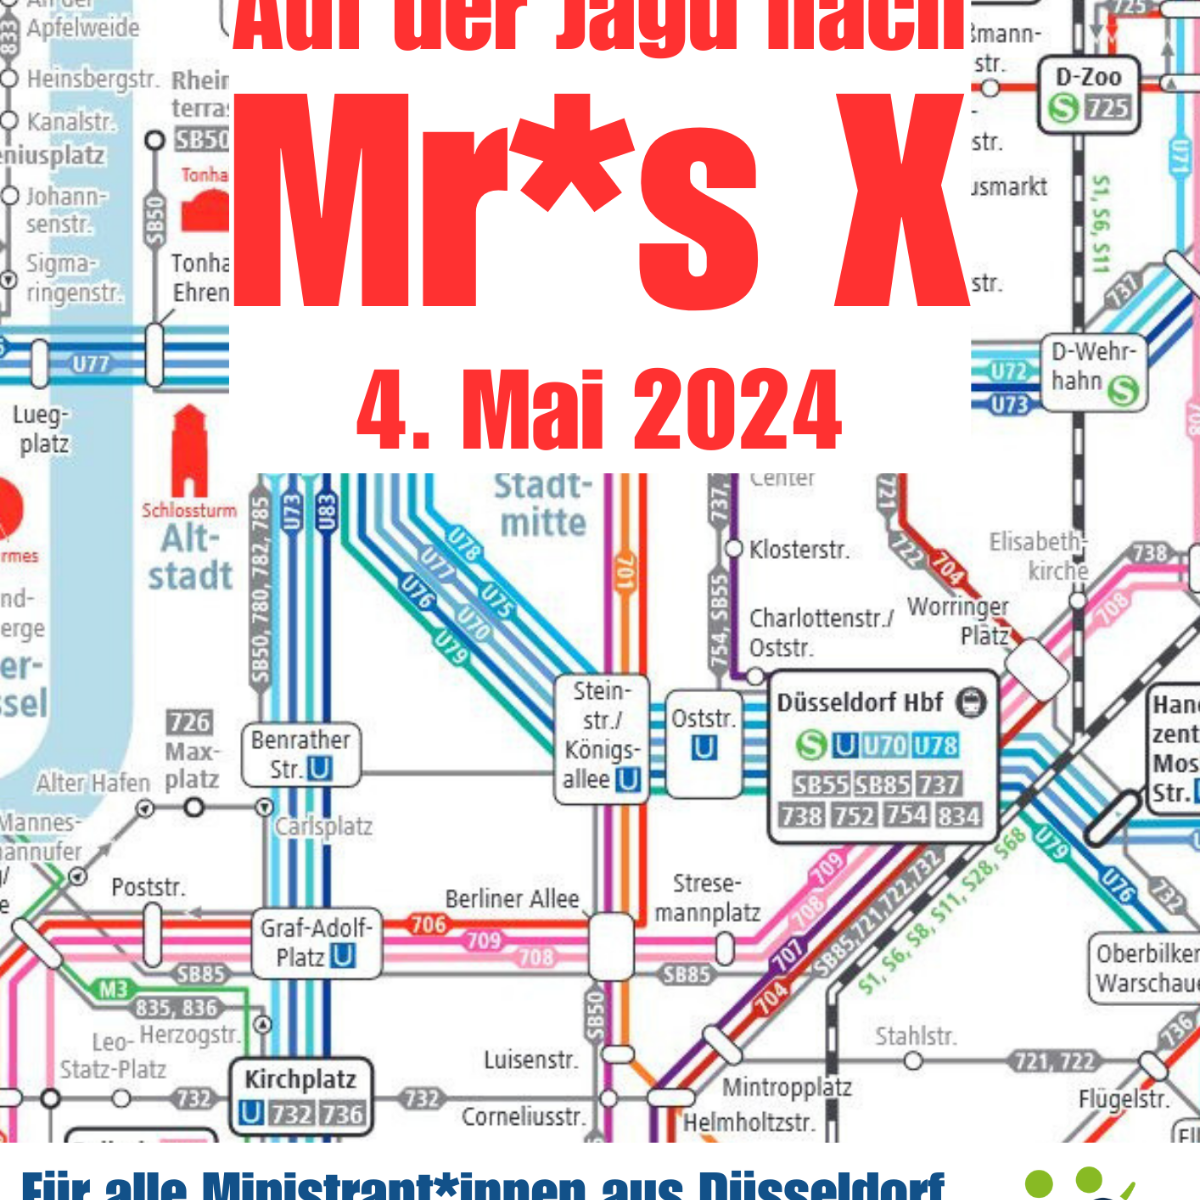 Ministrantinnen Tag Düsseldorf Auf der Jagdt nach Mrs. X 4. Mai 2024